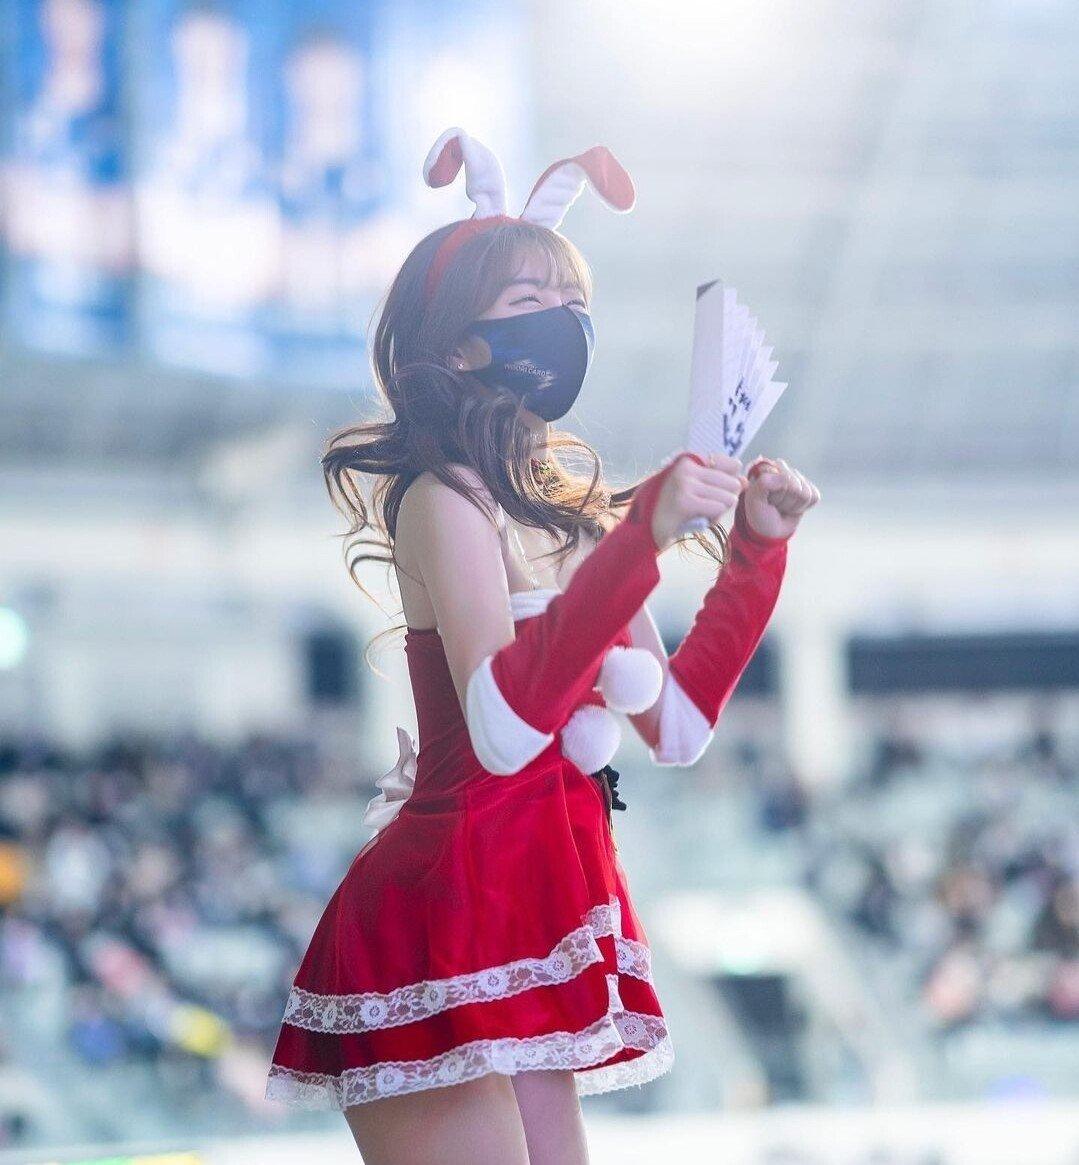 The 2022 Ahn Jihyun cheerleader Santa outfit